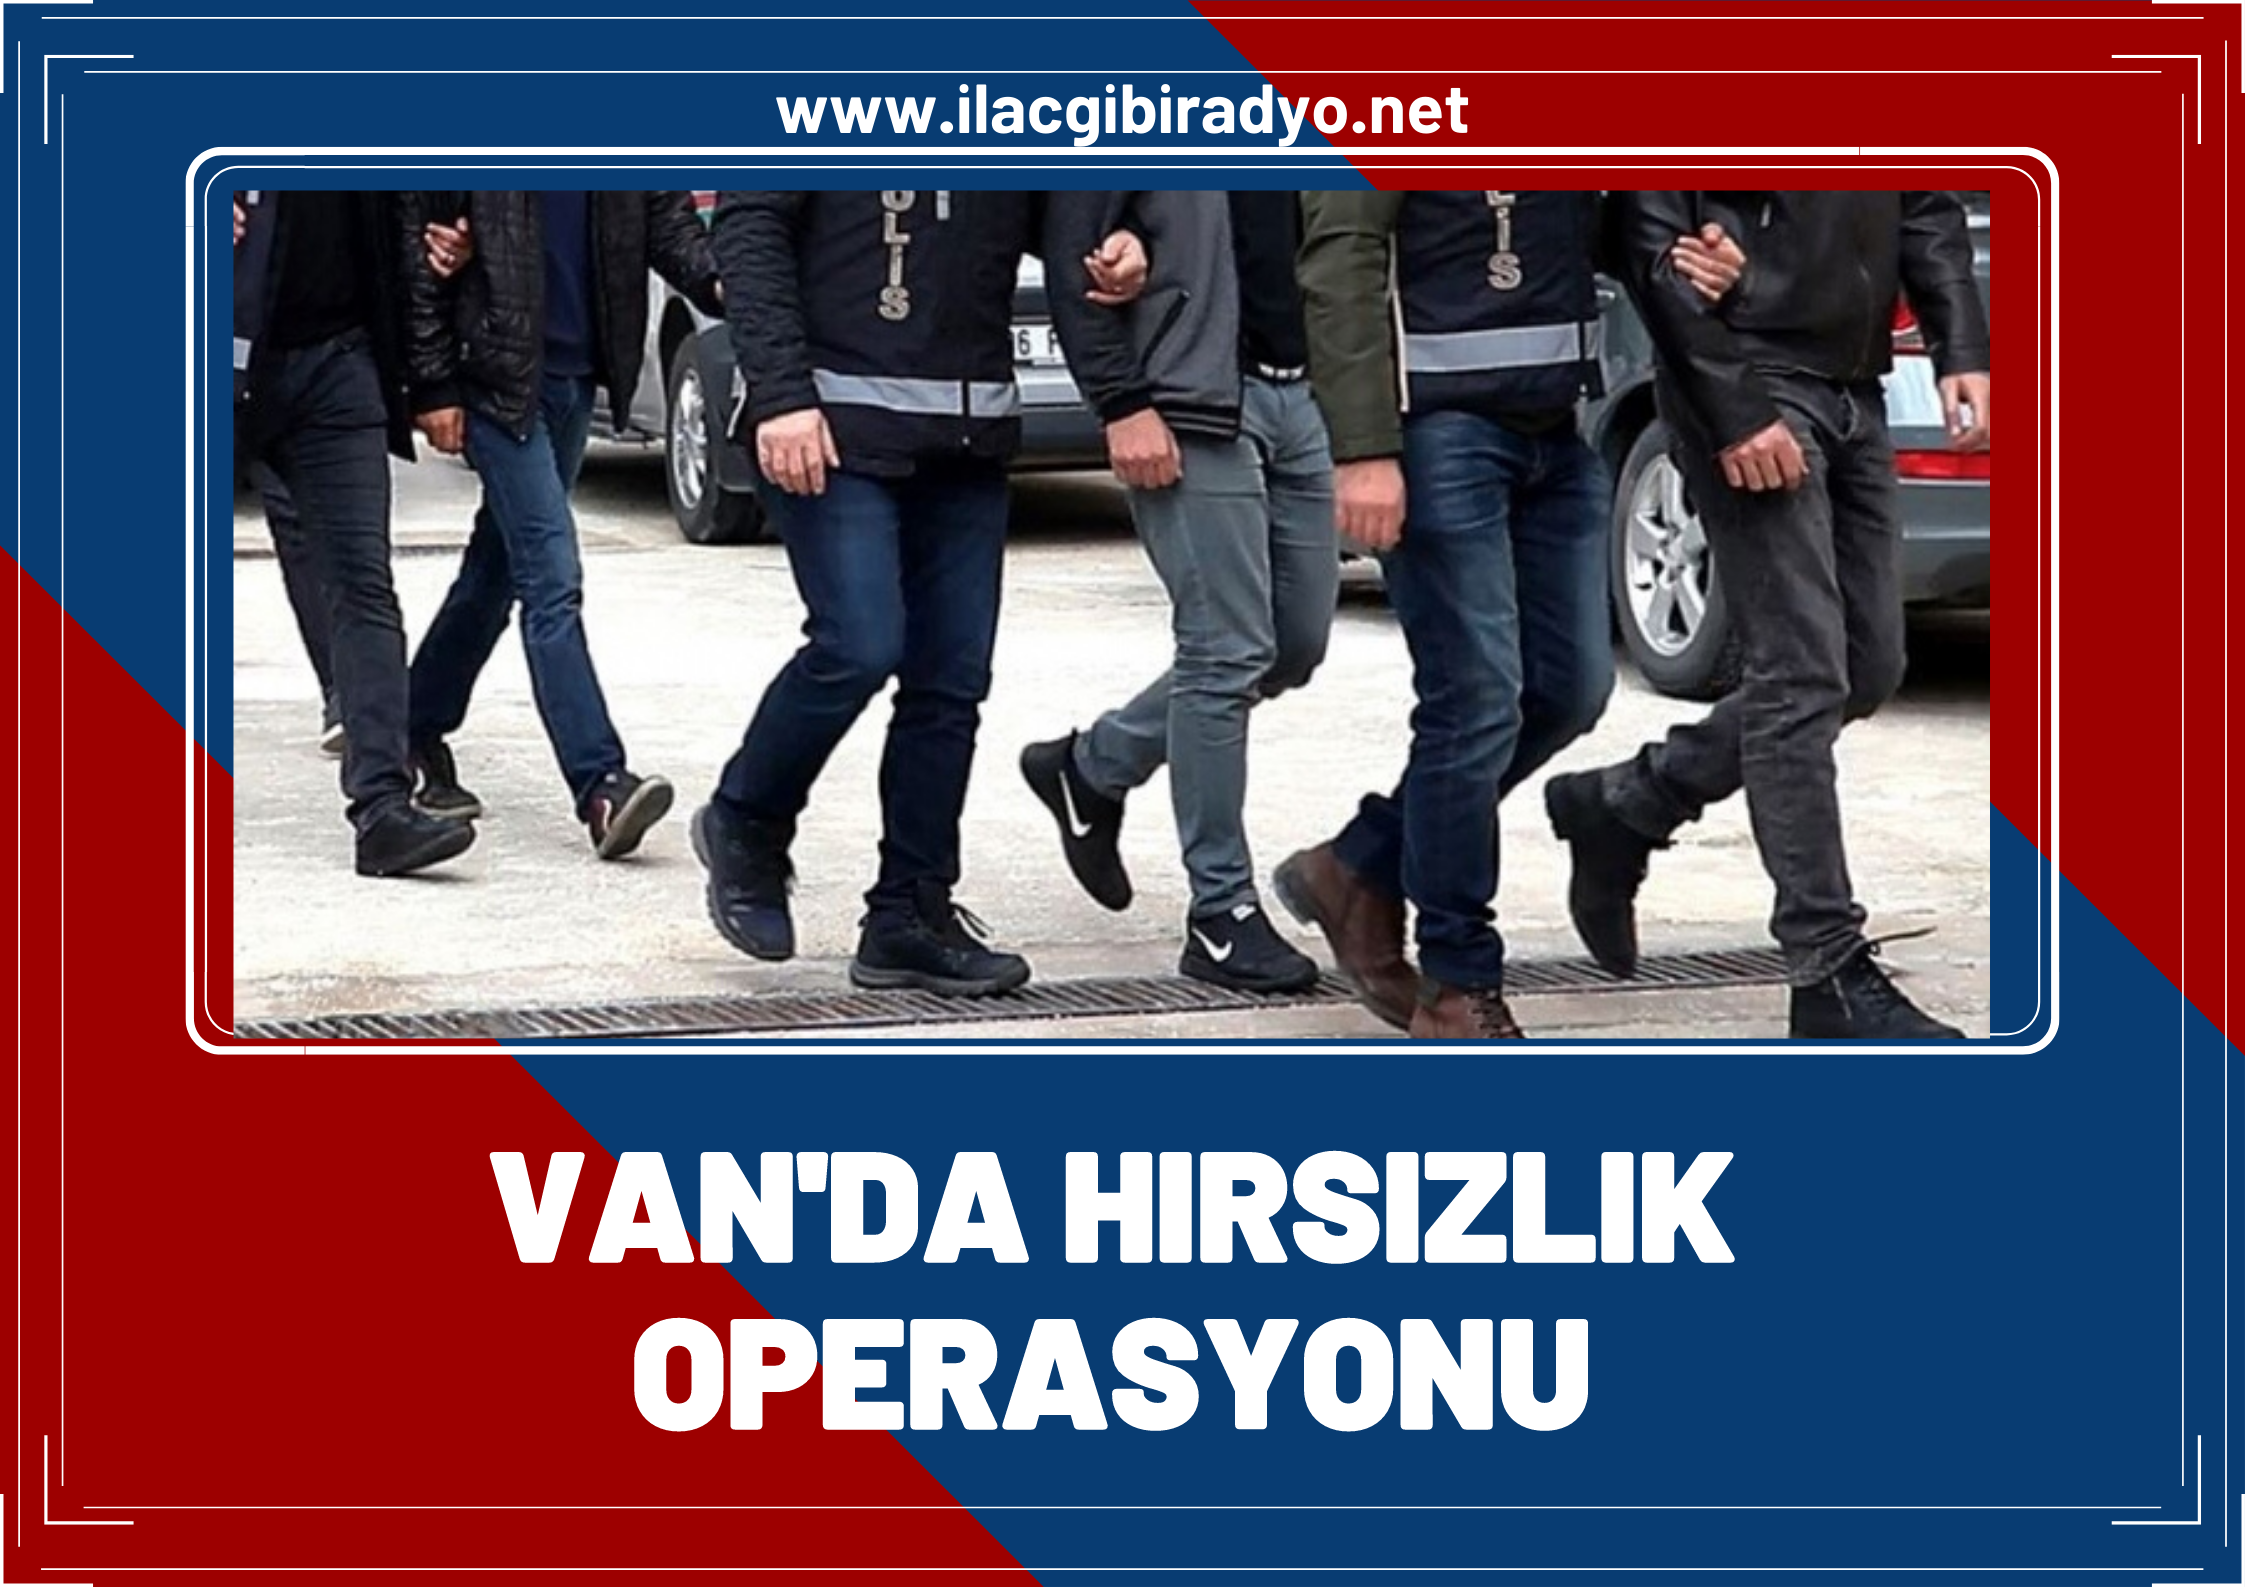 Van'da hırsızlık operasyonlarında 19 tutuklama kişi tutuklandı!